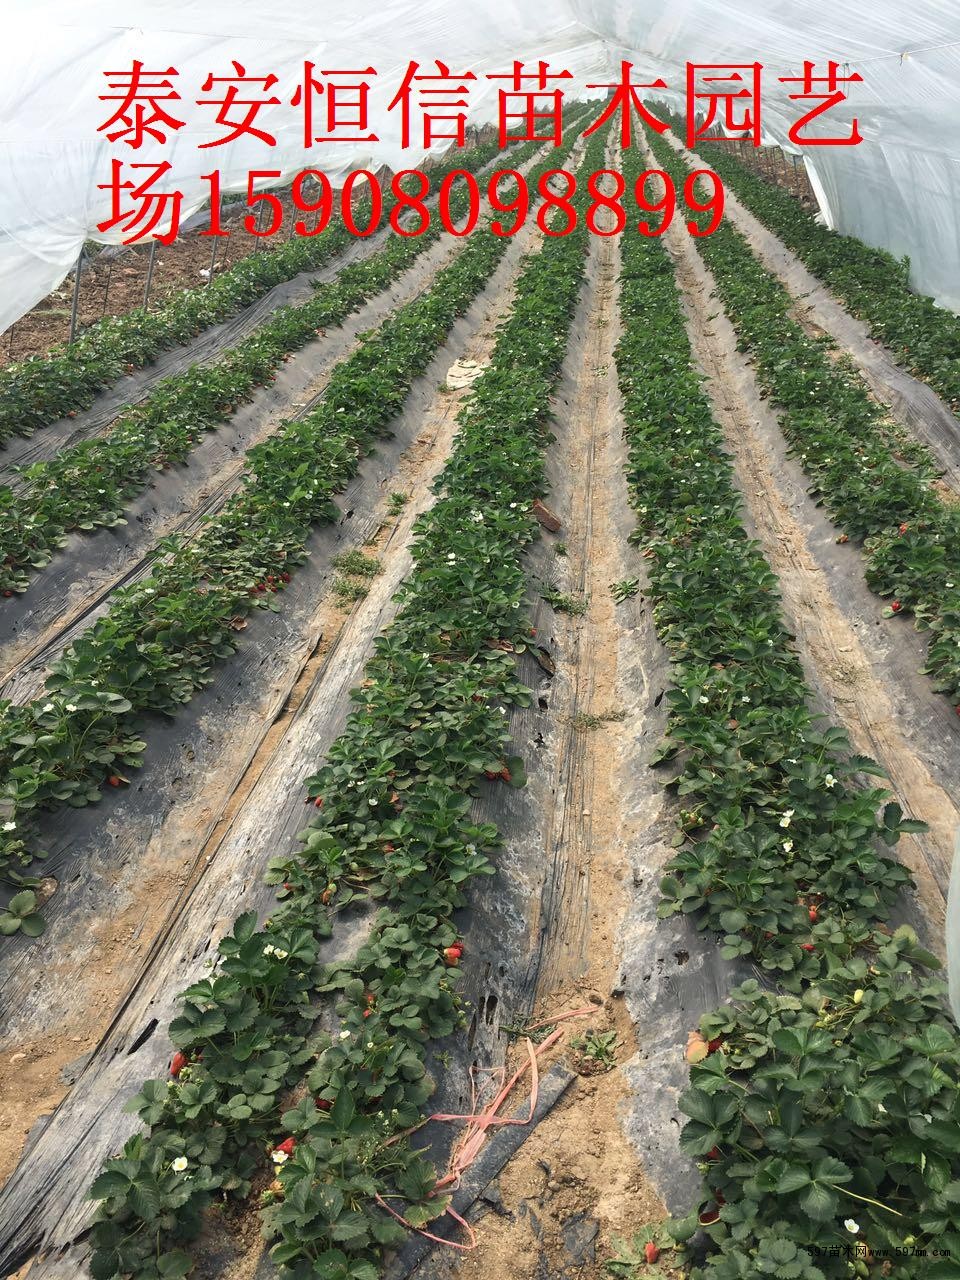 法兰地草莓苗图片|苗木|苗木图库|597苗木网